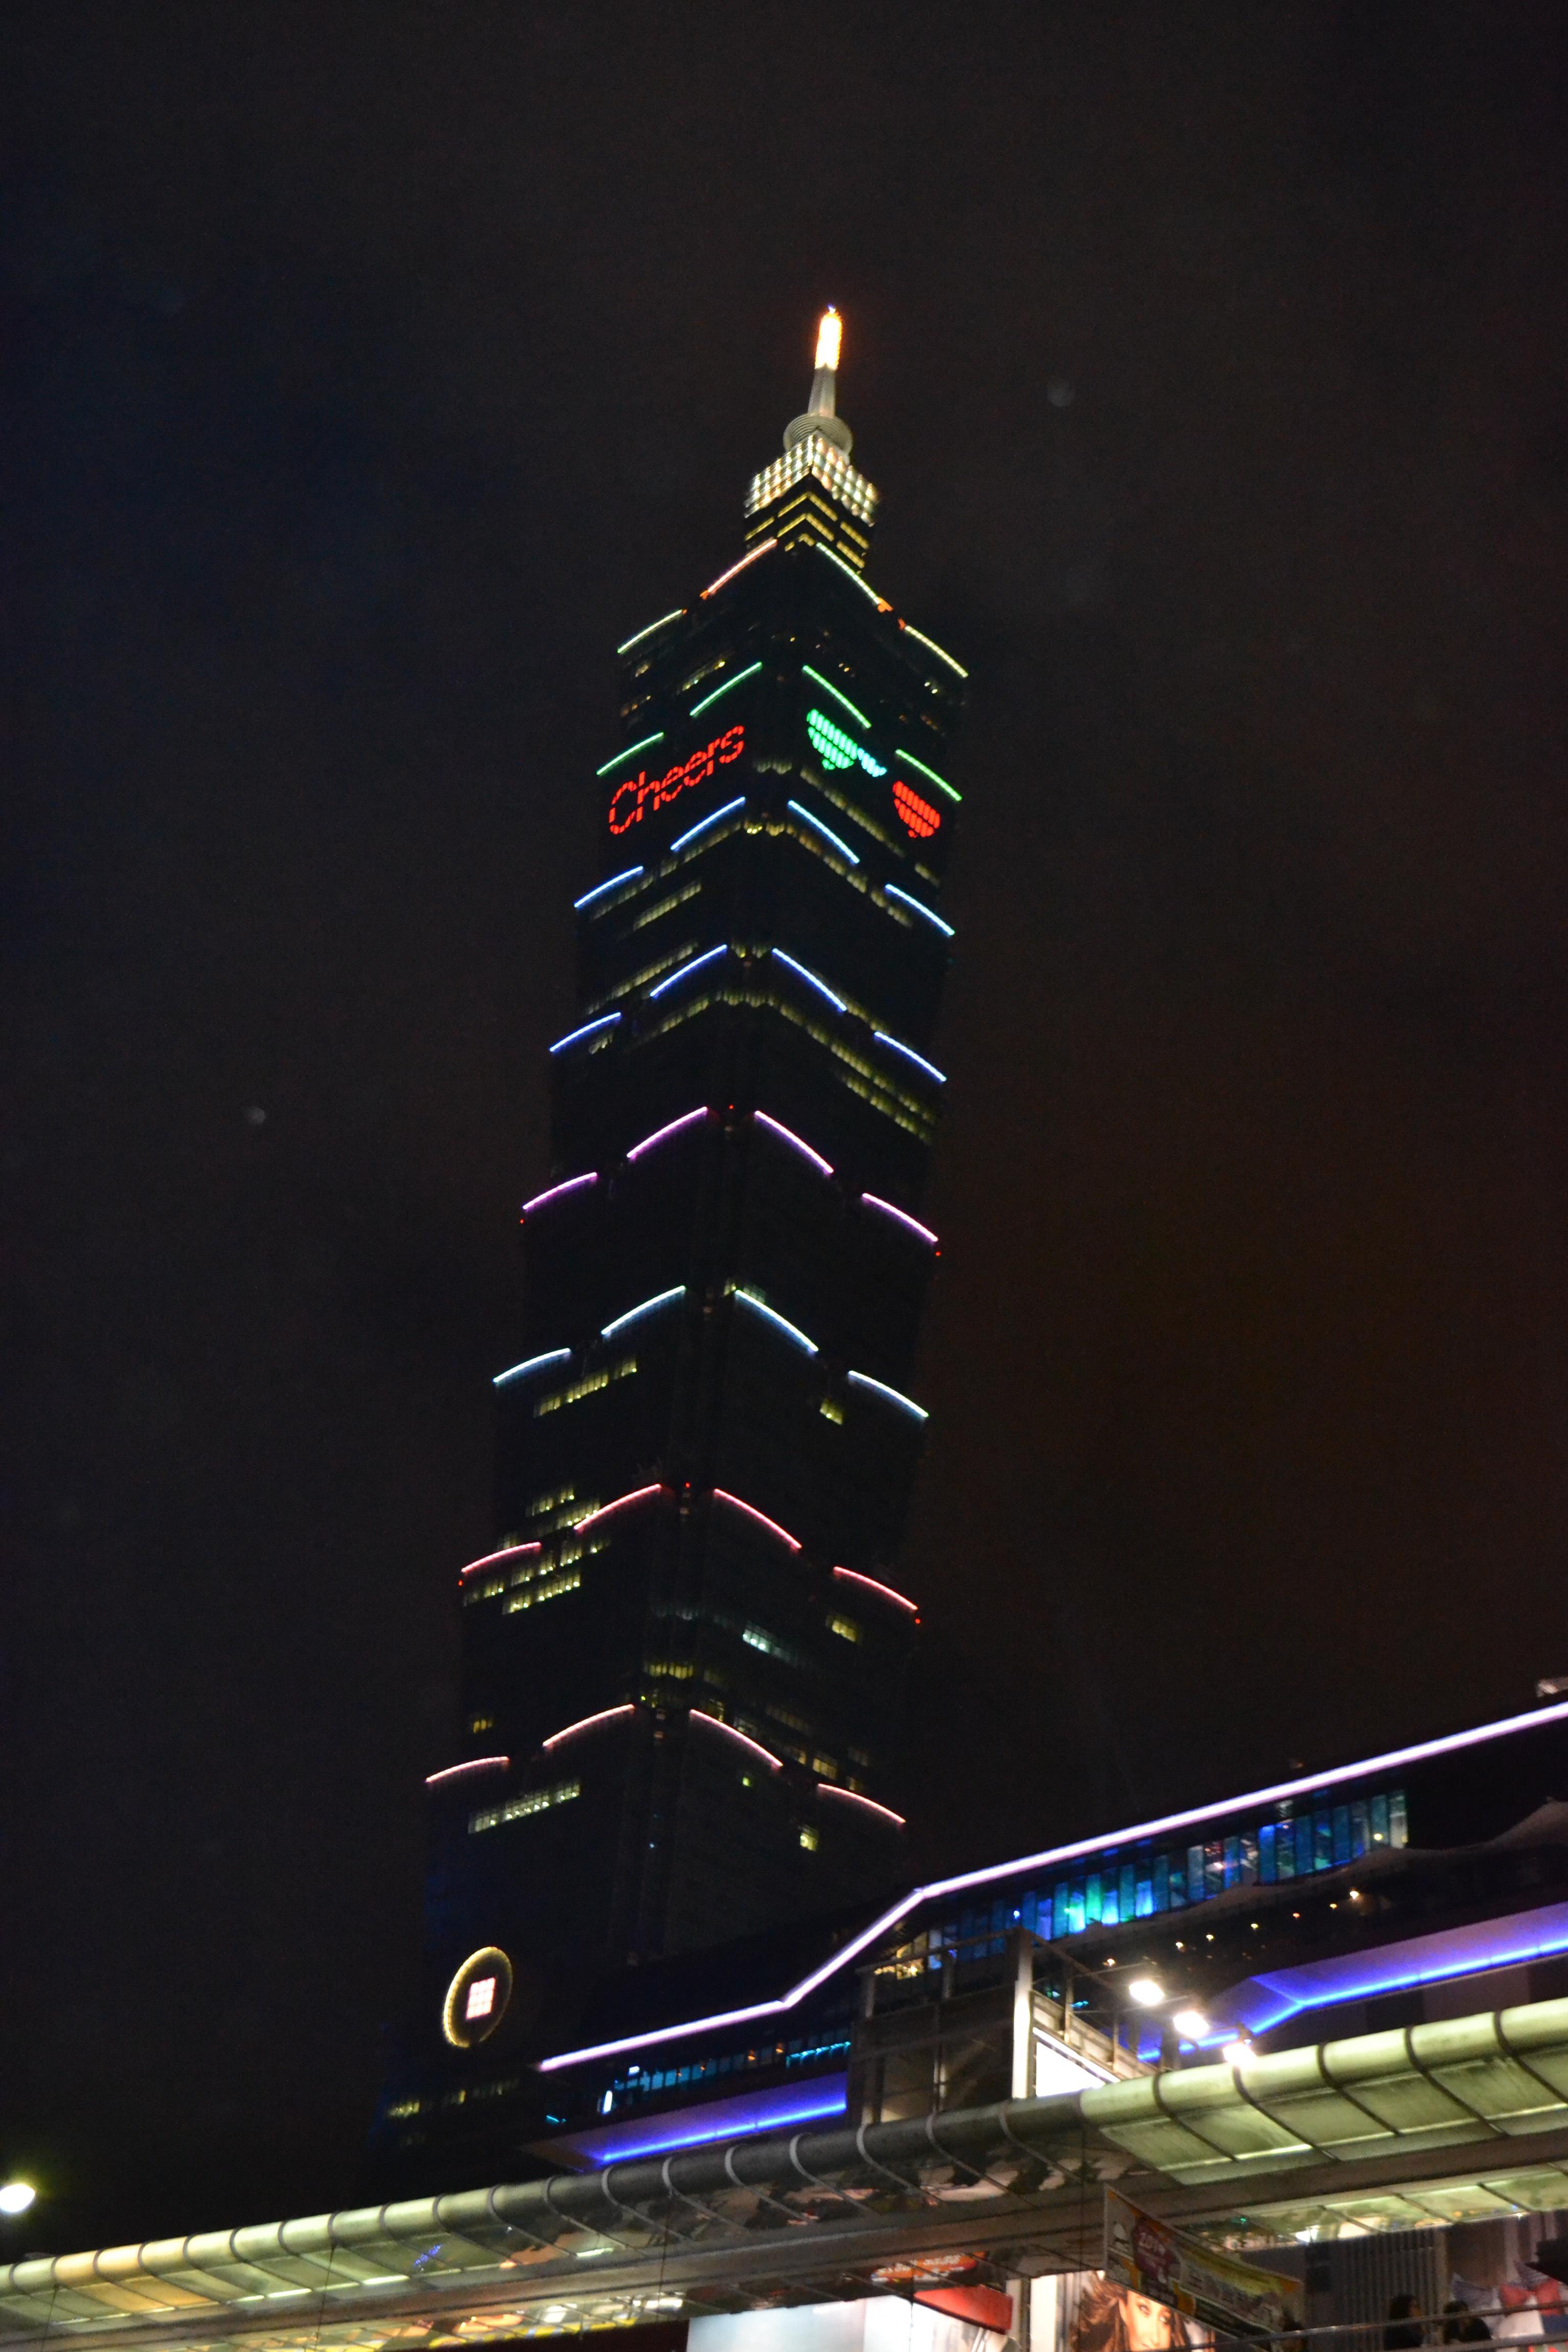 Sube al Taipei 101 (台北101觀景台) - Vive Taiwán